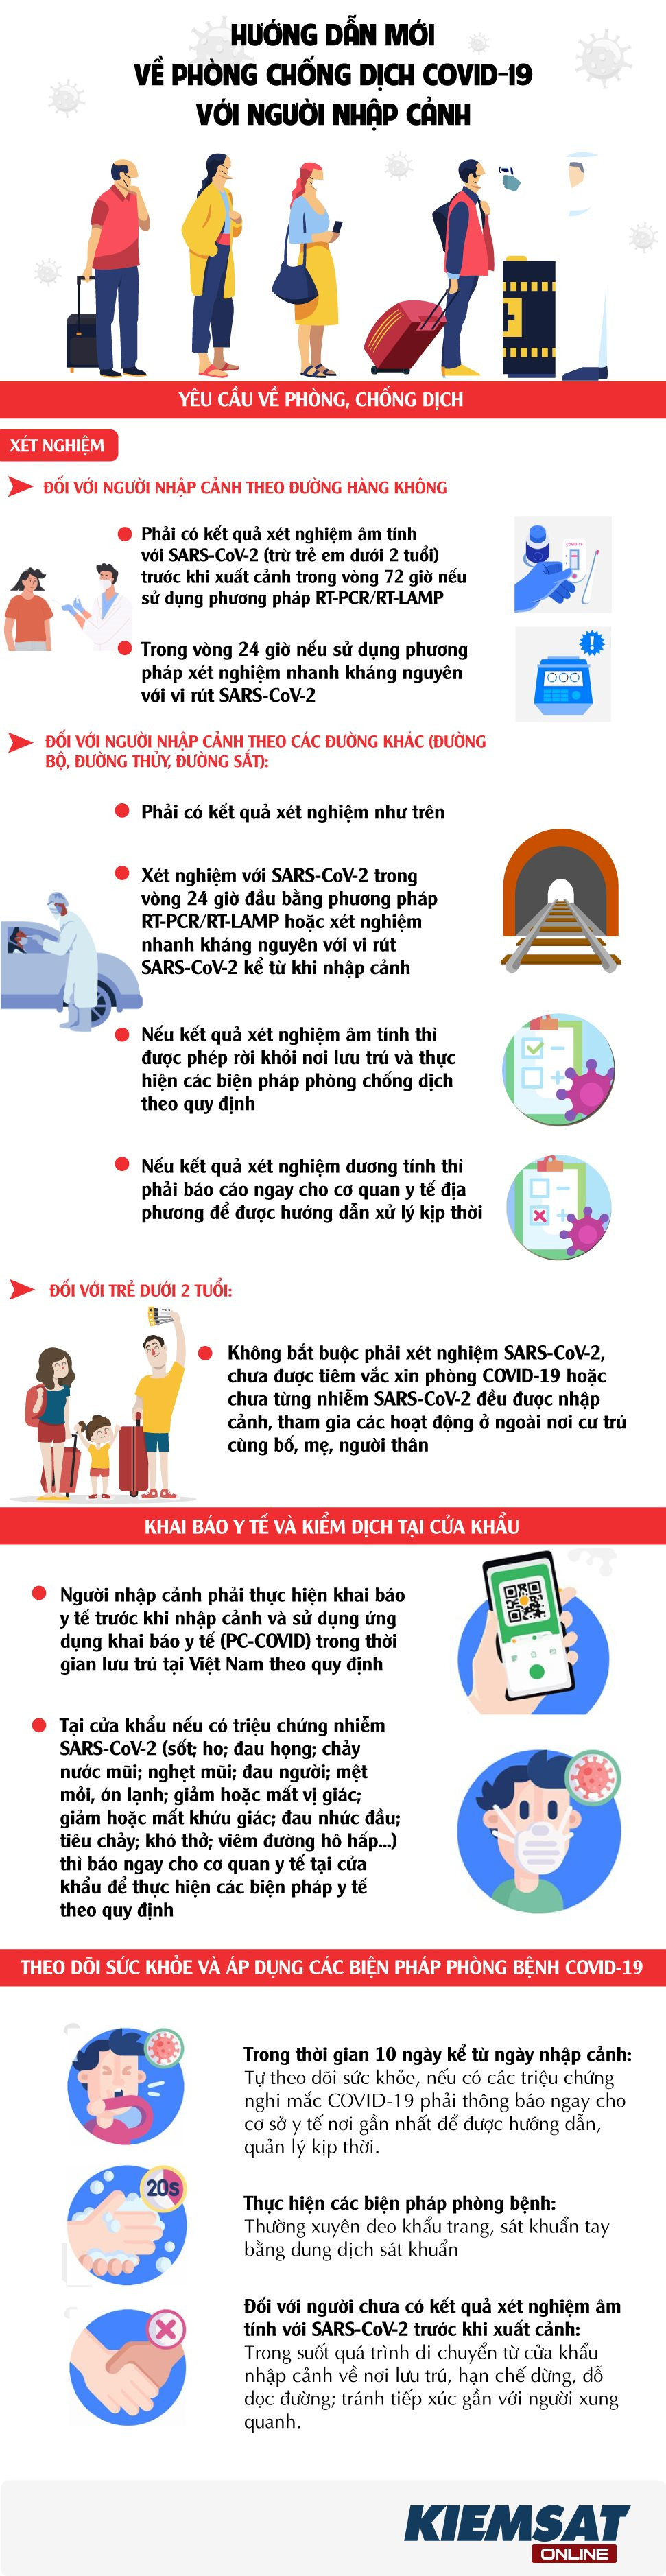 Infographic: Hướng dẫn mới về phòng chống dịch Covid-19 với người nhập cảnh  - Kiểm Sát Online